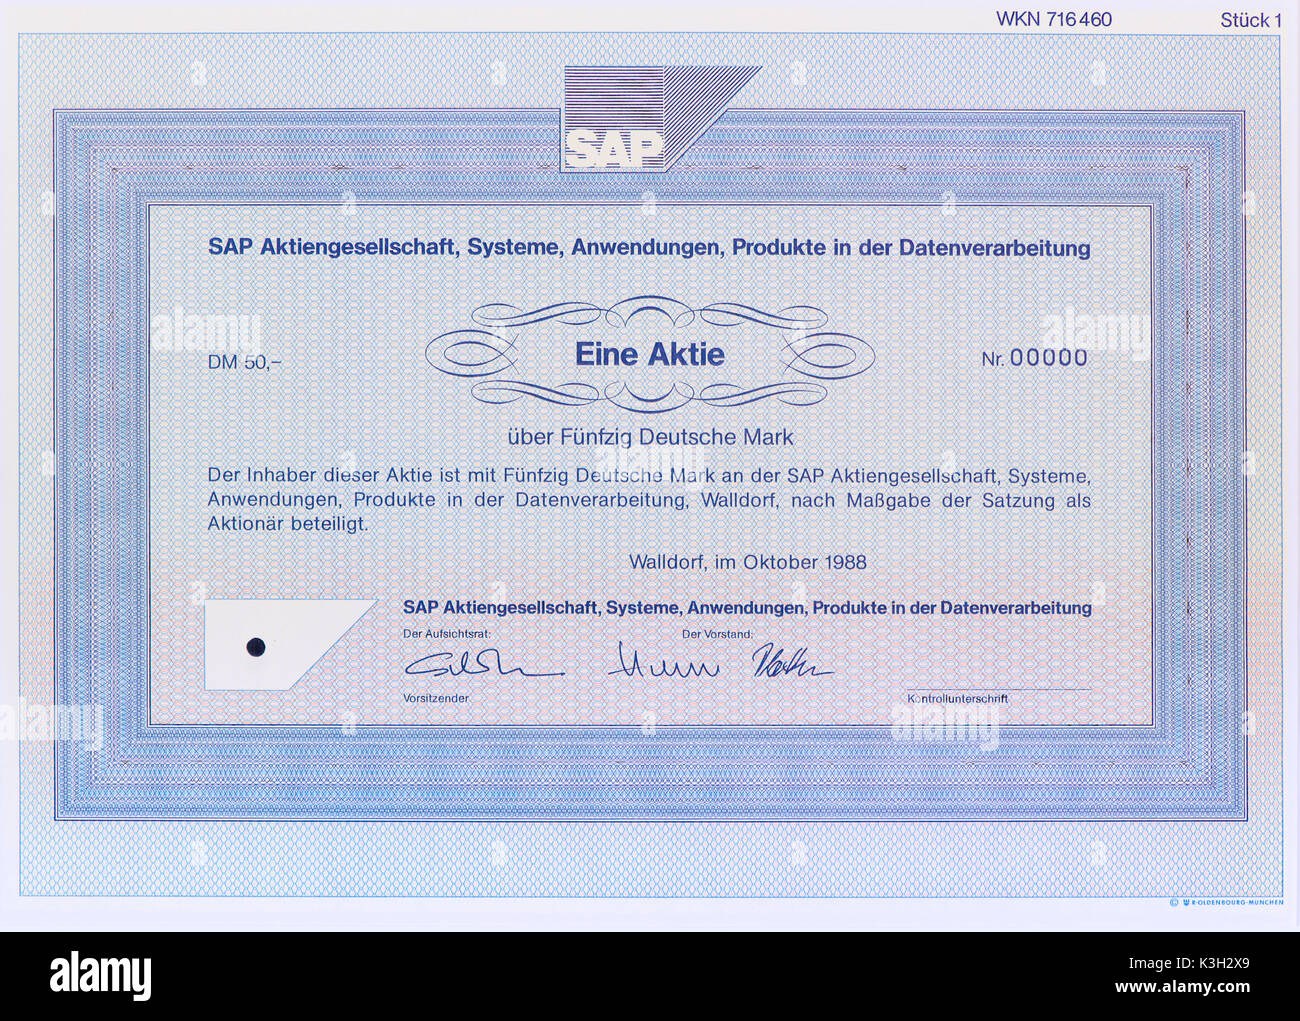 Magazzino della società SAP, sistemi, applicazioni, prodotti di elaborazione dati Foto Stock